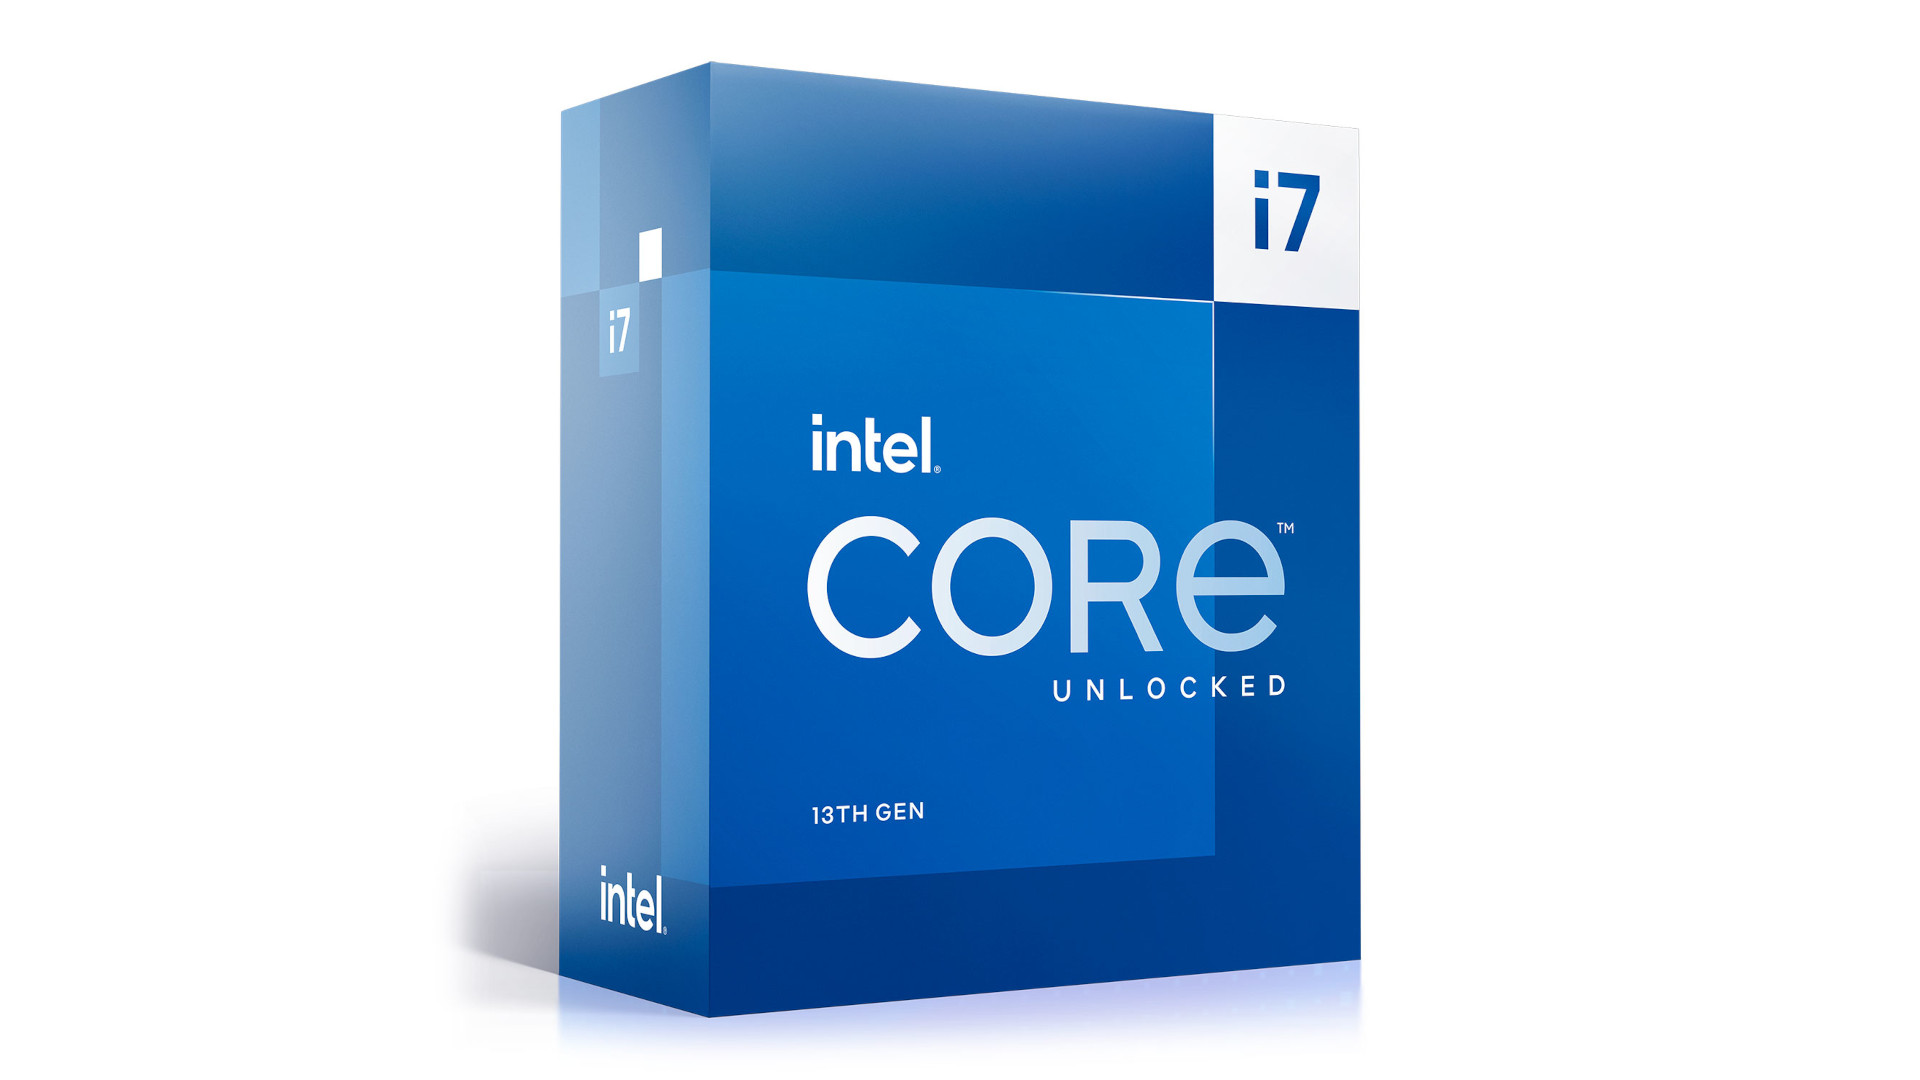 La mejor CPU para transmitir es el Intel Core i7 13700K